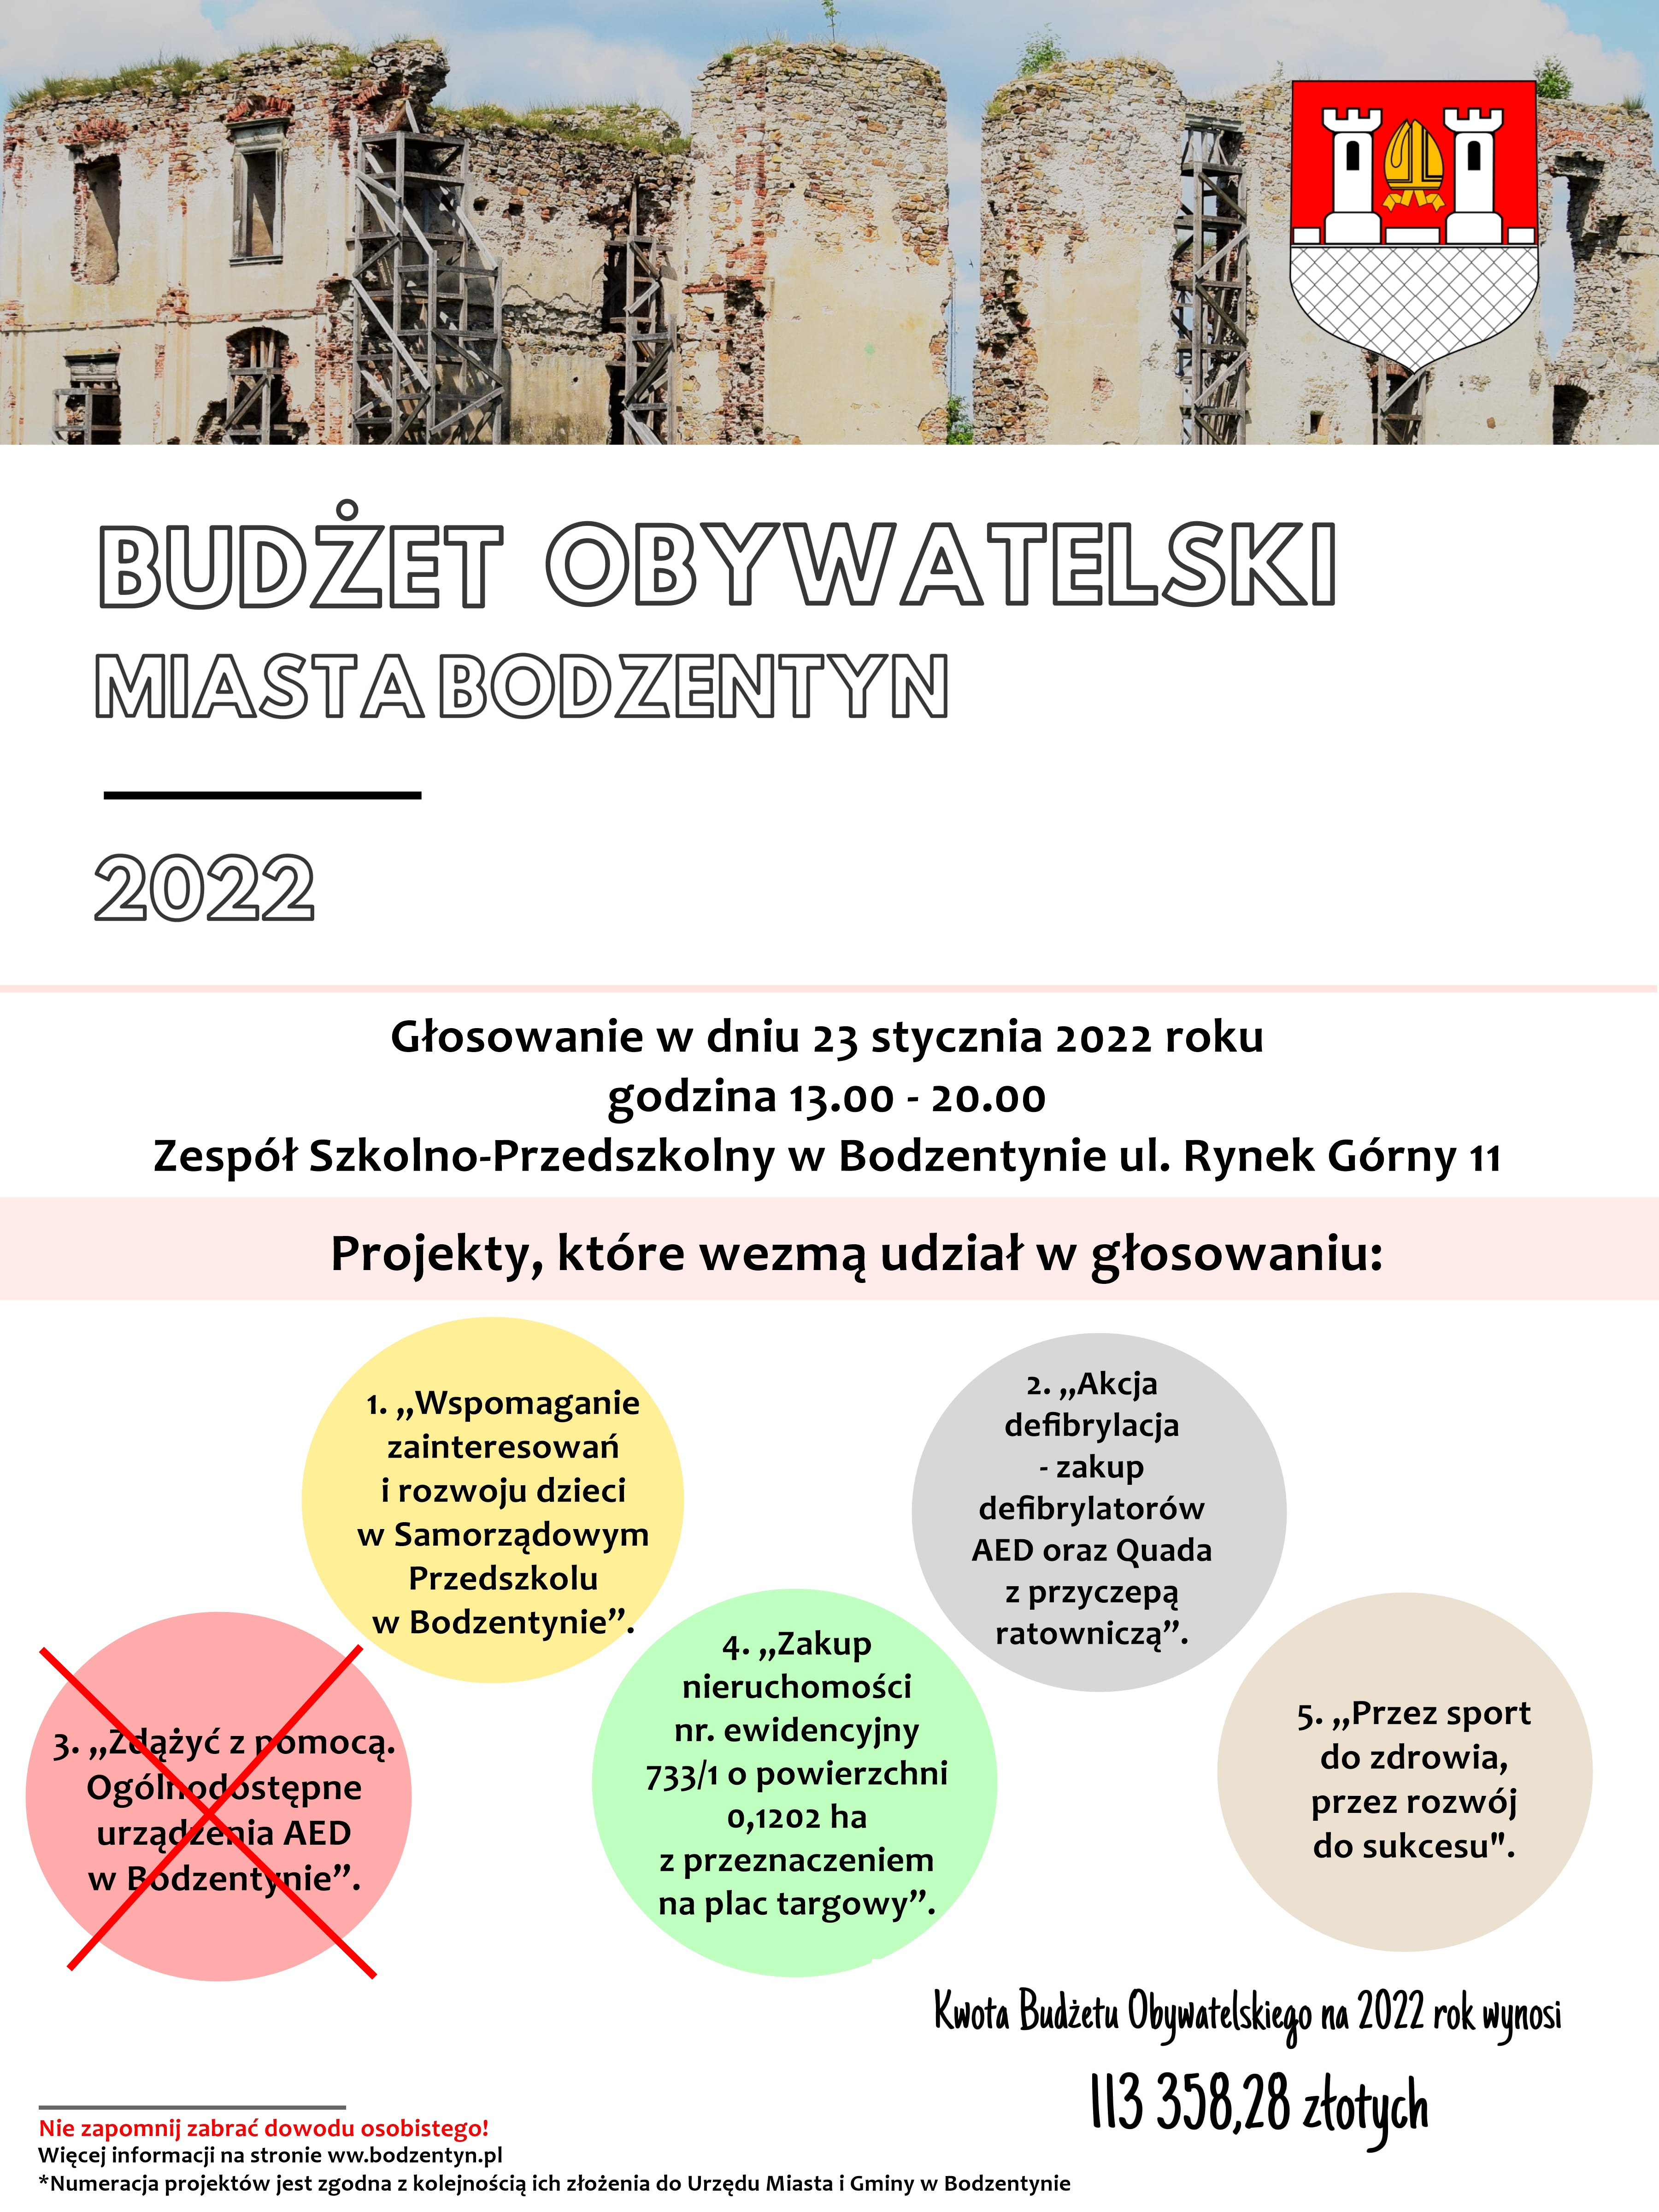 Budżet Miasta Bodzentyn 2022 - wycofano projekt nr 3